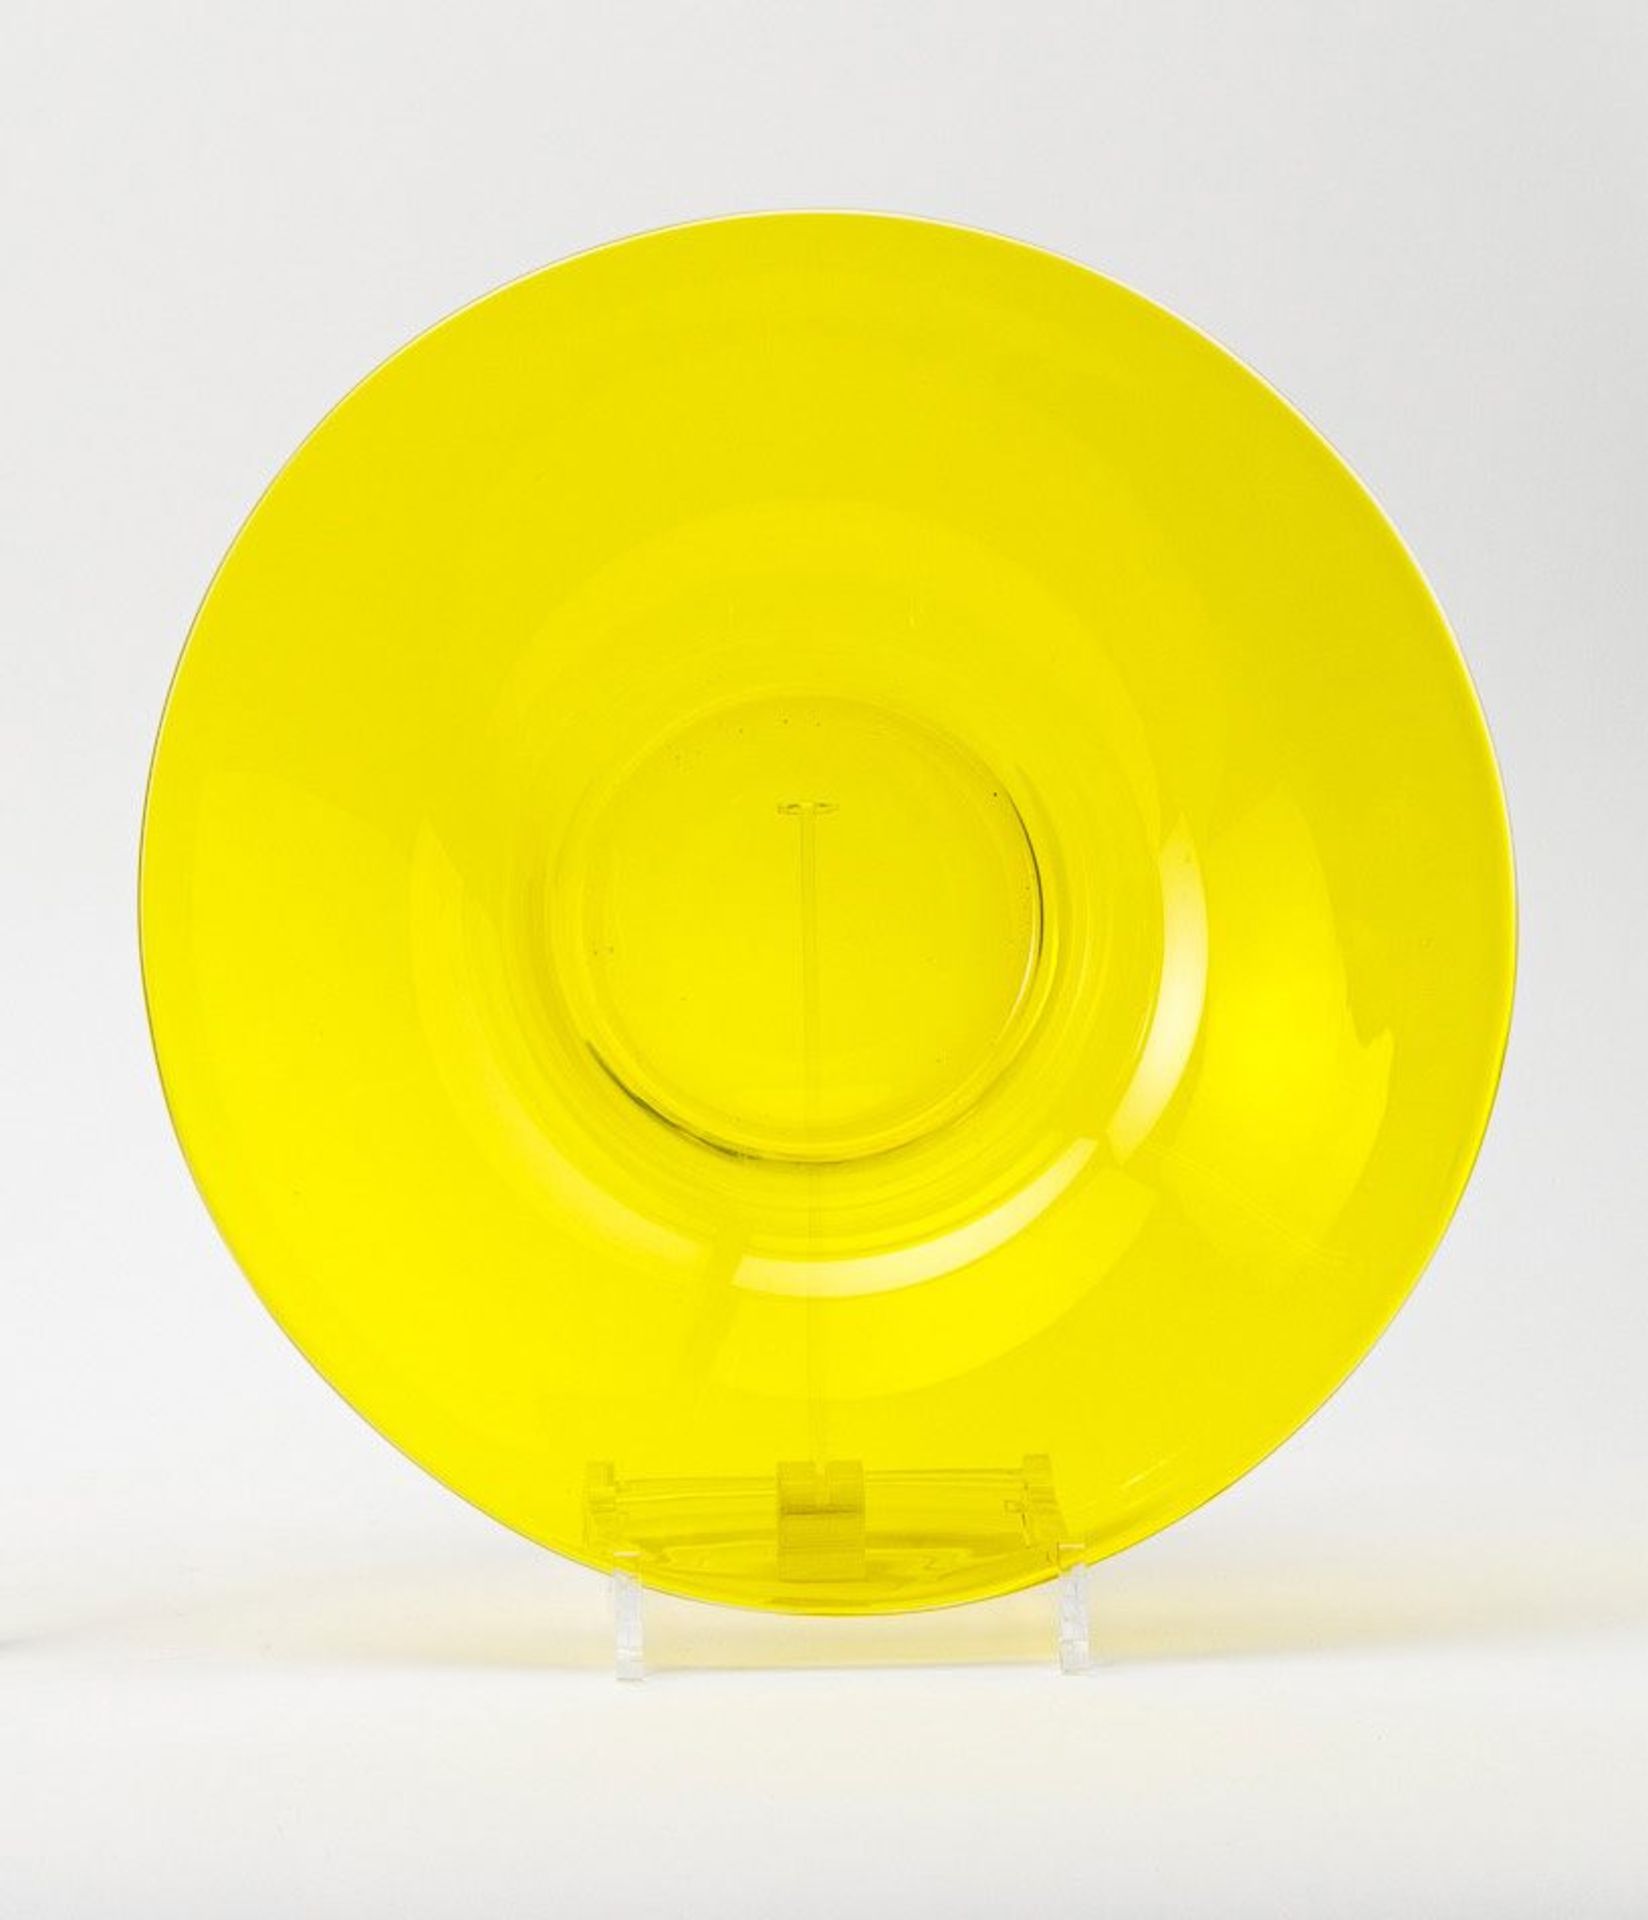 SchaleTransparentes gelbes Glas. Runder Stand, trichterförmiger Korpus, ausschwingender Rand. Wohl